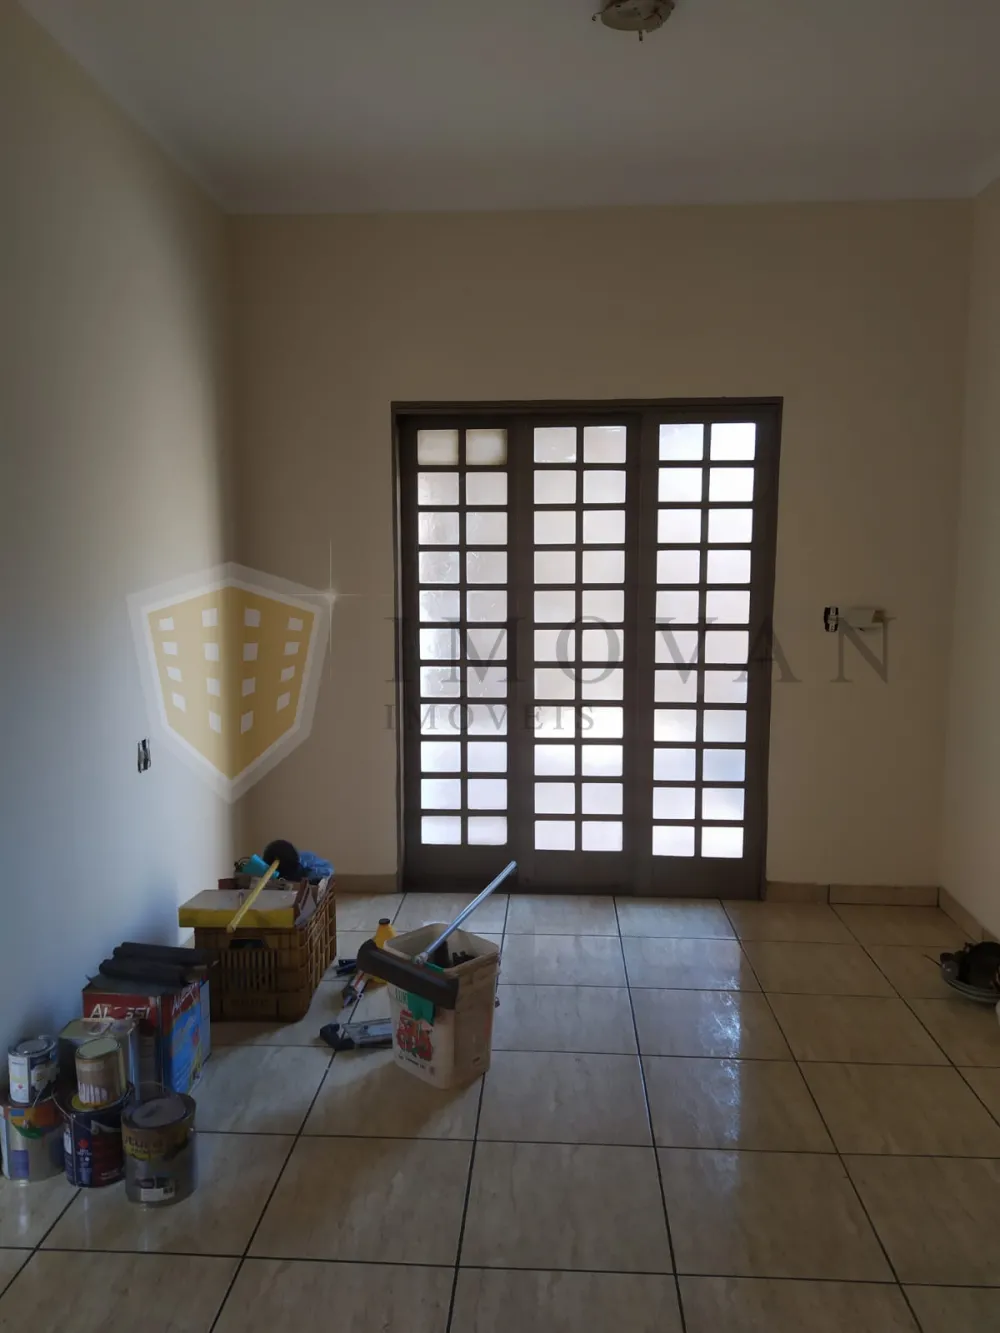 Alugar Casa / Padrão em Ribeirão Preto R$ 1.400,00 - Foto 11